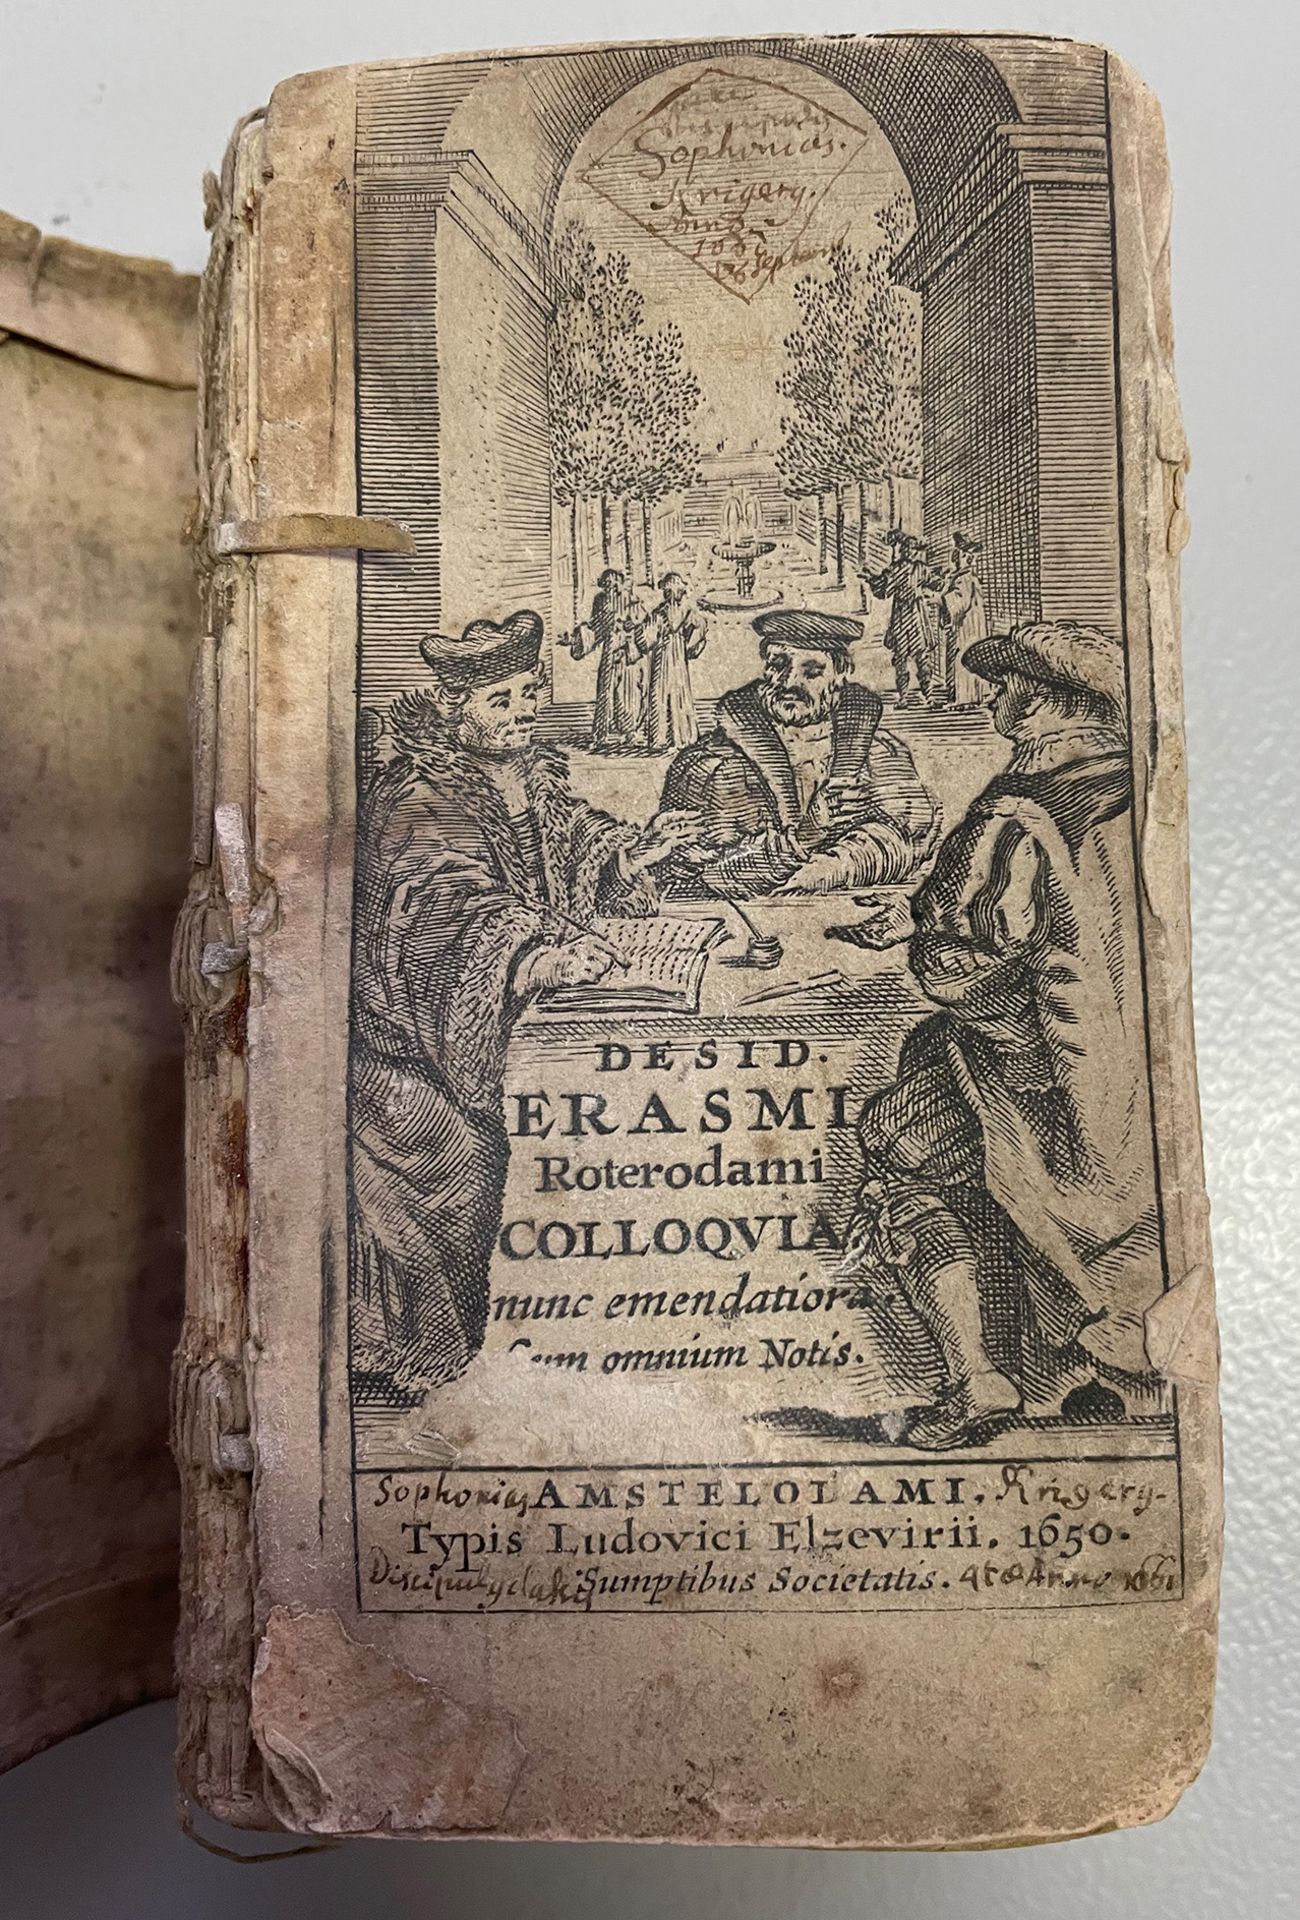 Desid. Erasmi Roterodami Colloquia nunc emendatoria. Cum omnium notis.Erasmus von Rotterdam, 1650 (